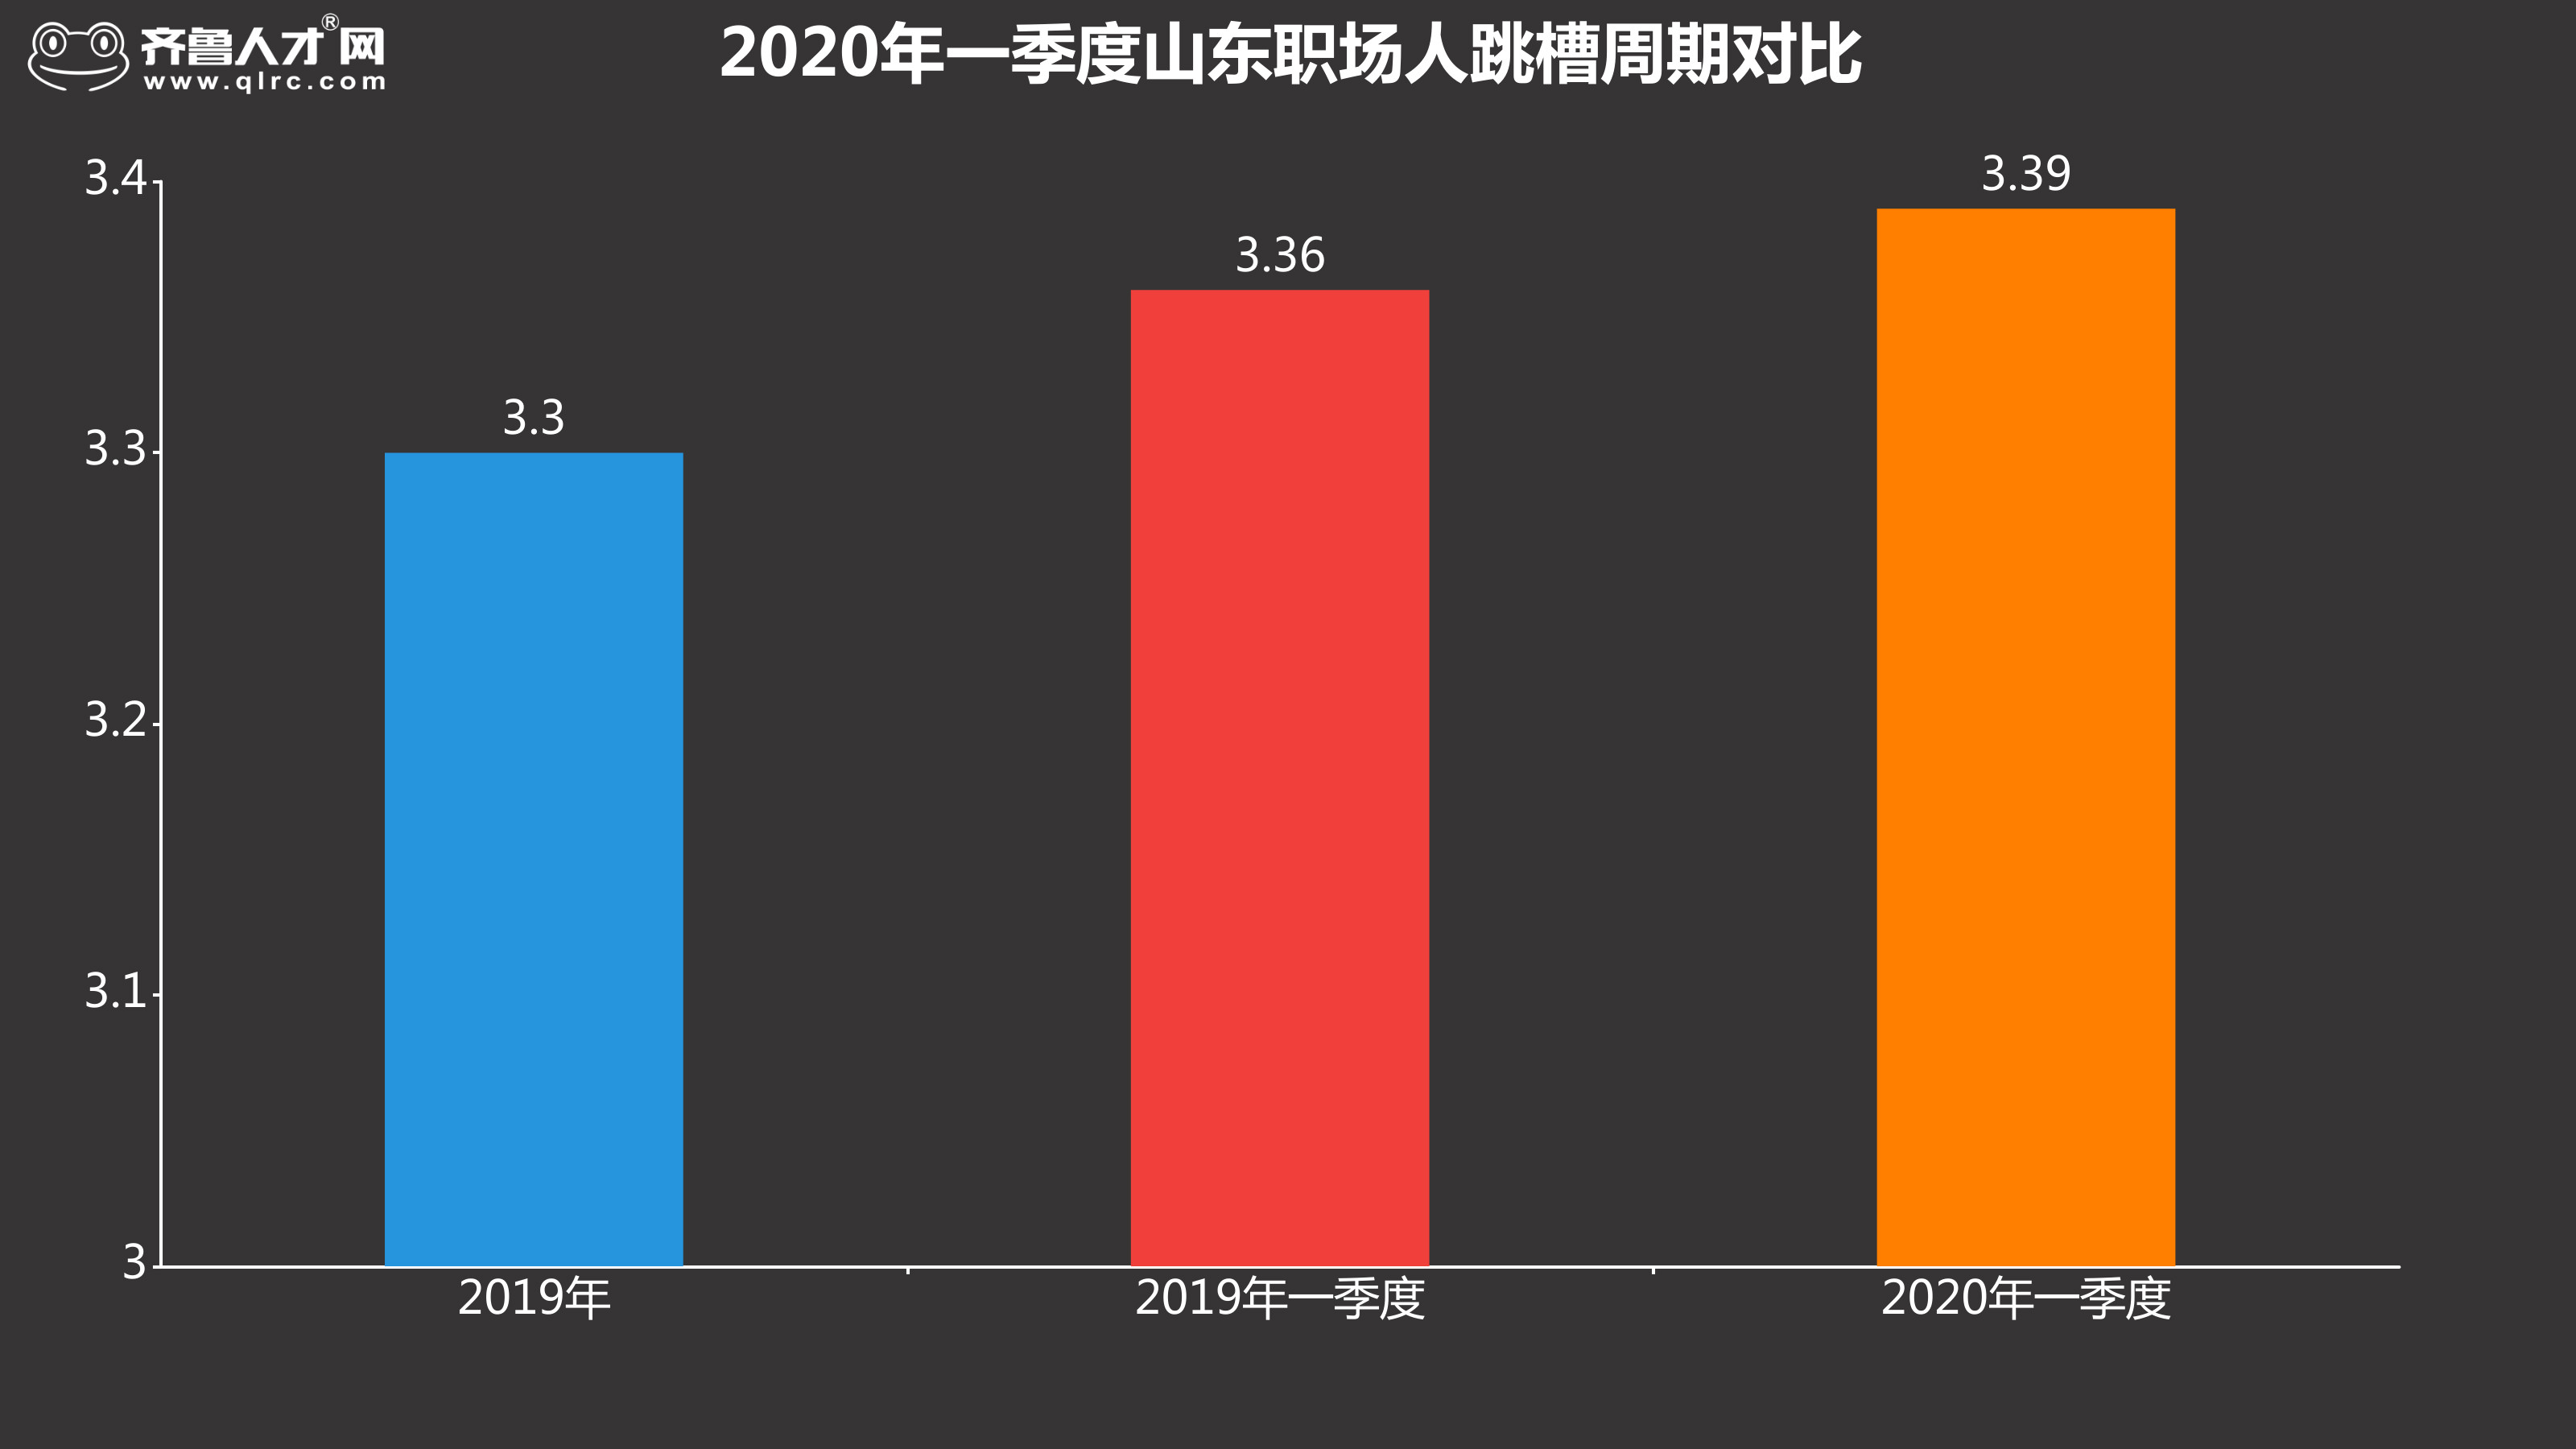 齊魯人才網-2020年一季度跳槽數據圖1.jpg